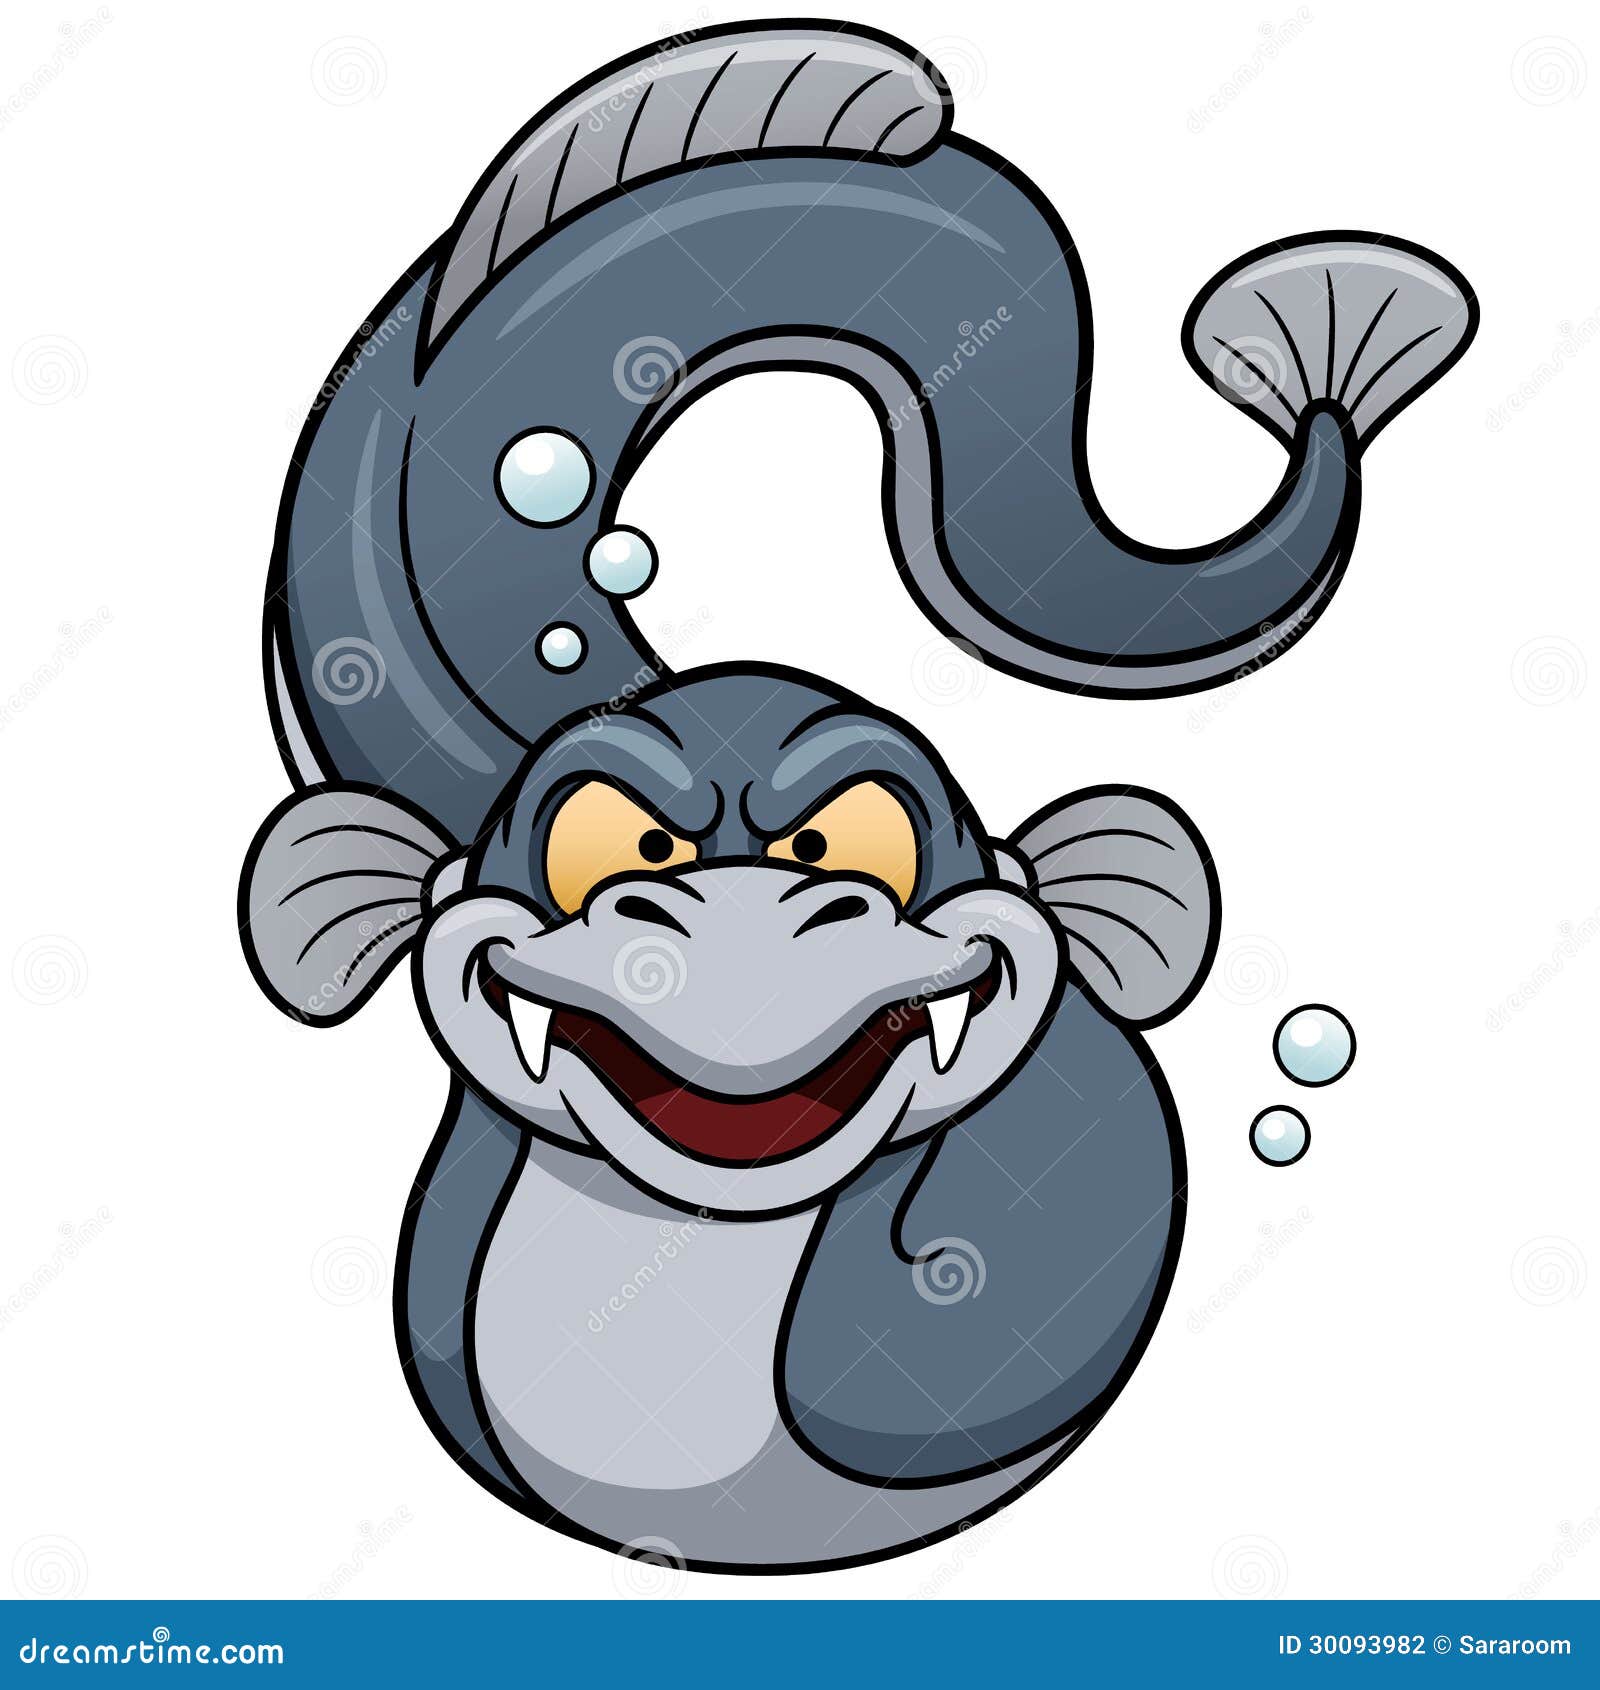 electric eel cartoon